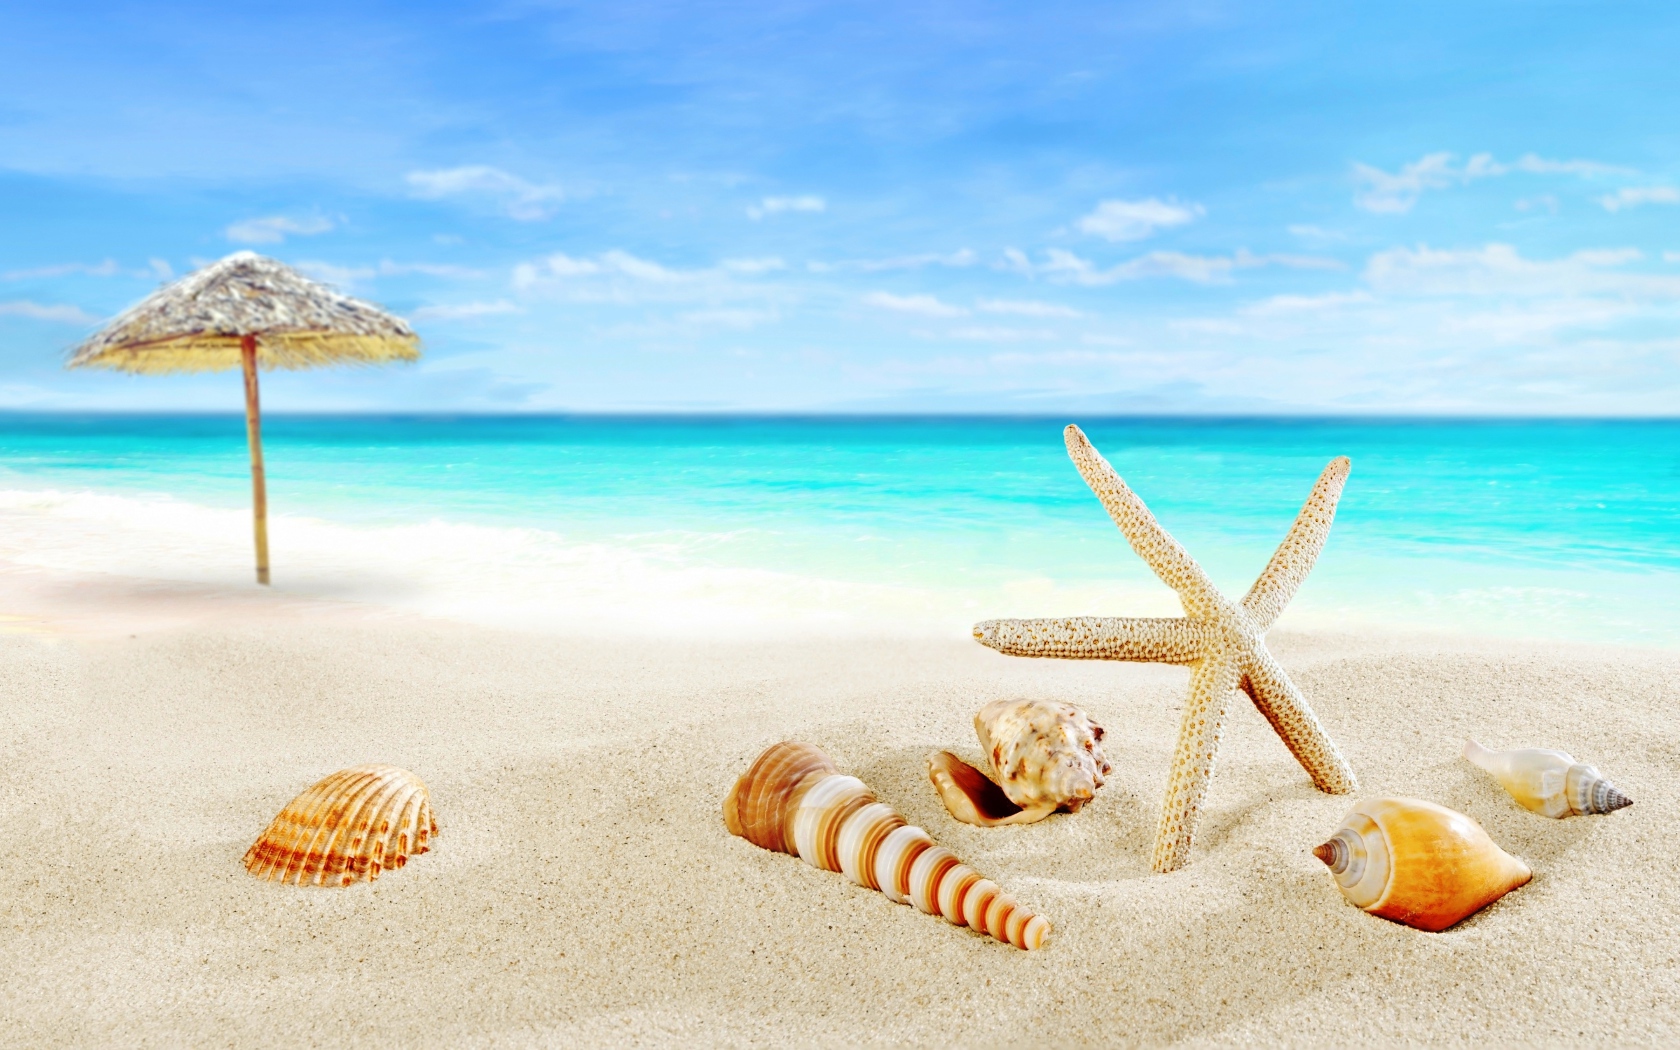 Ракушки и зонт на тропическом пляже